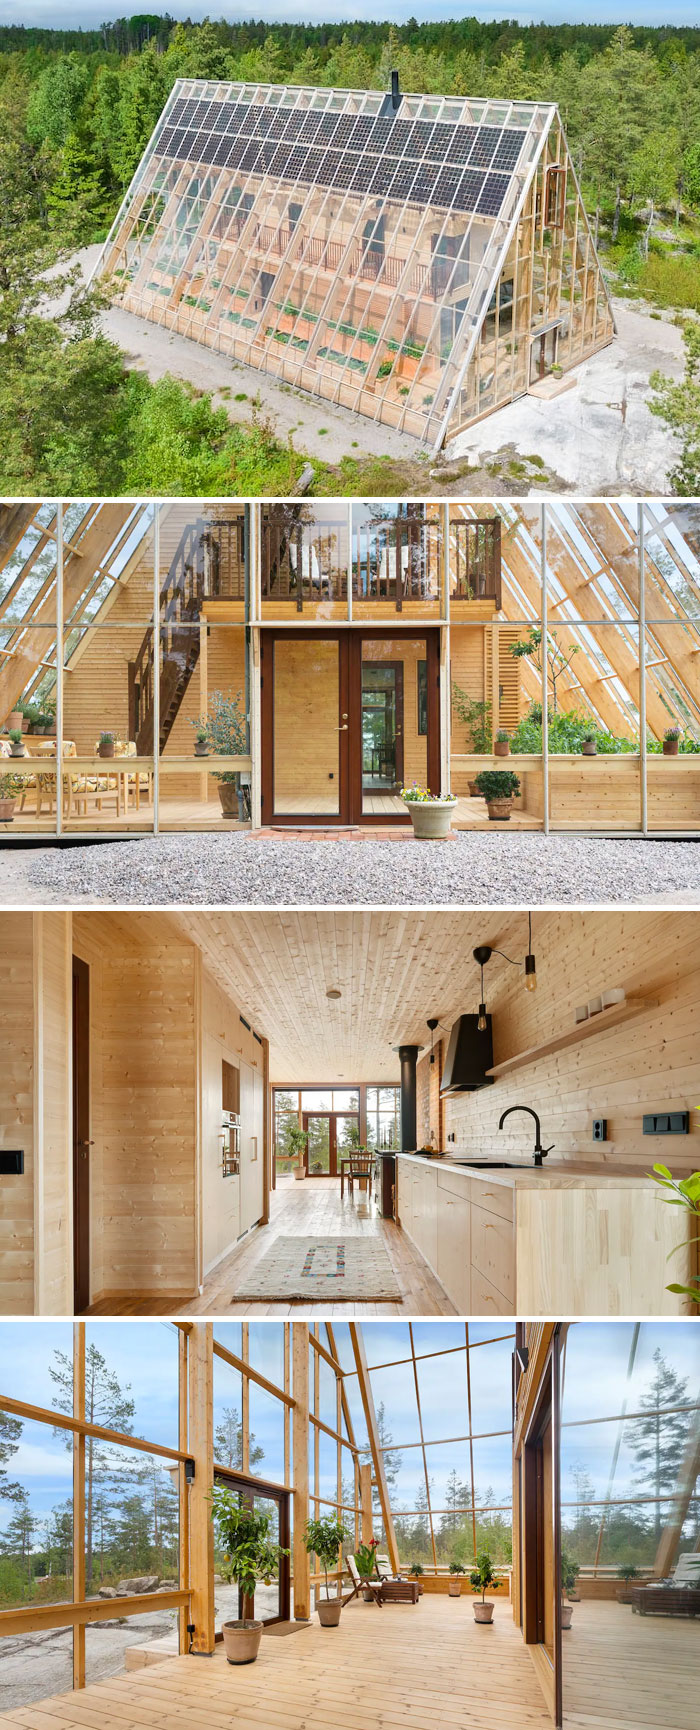 Ngôi nhà thiên nhiên hữu cơ được thiết kế độc đáo. Brålanda, Västra Götalands Län, Thụy Điển